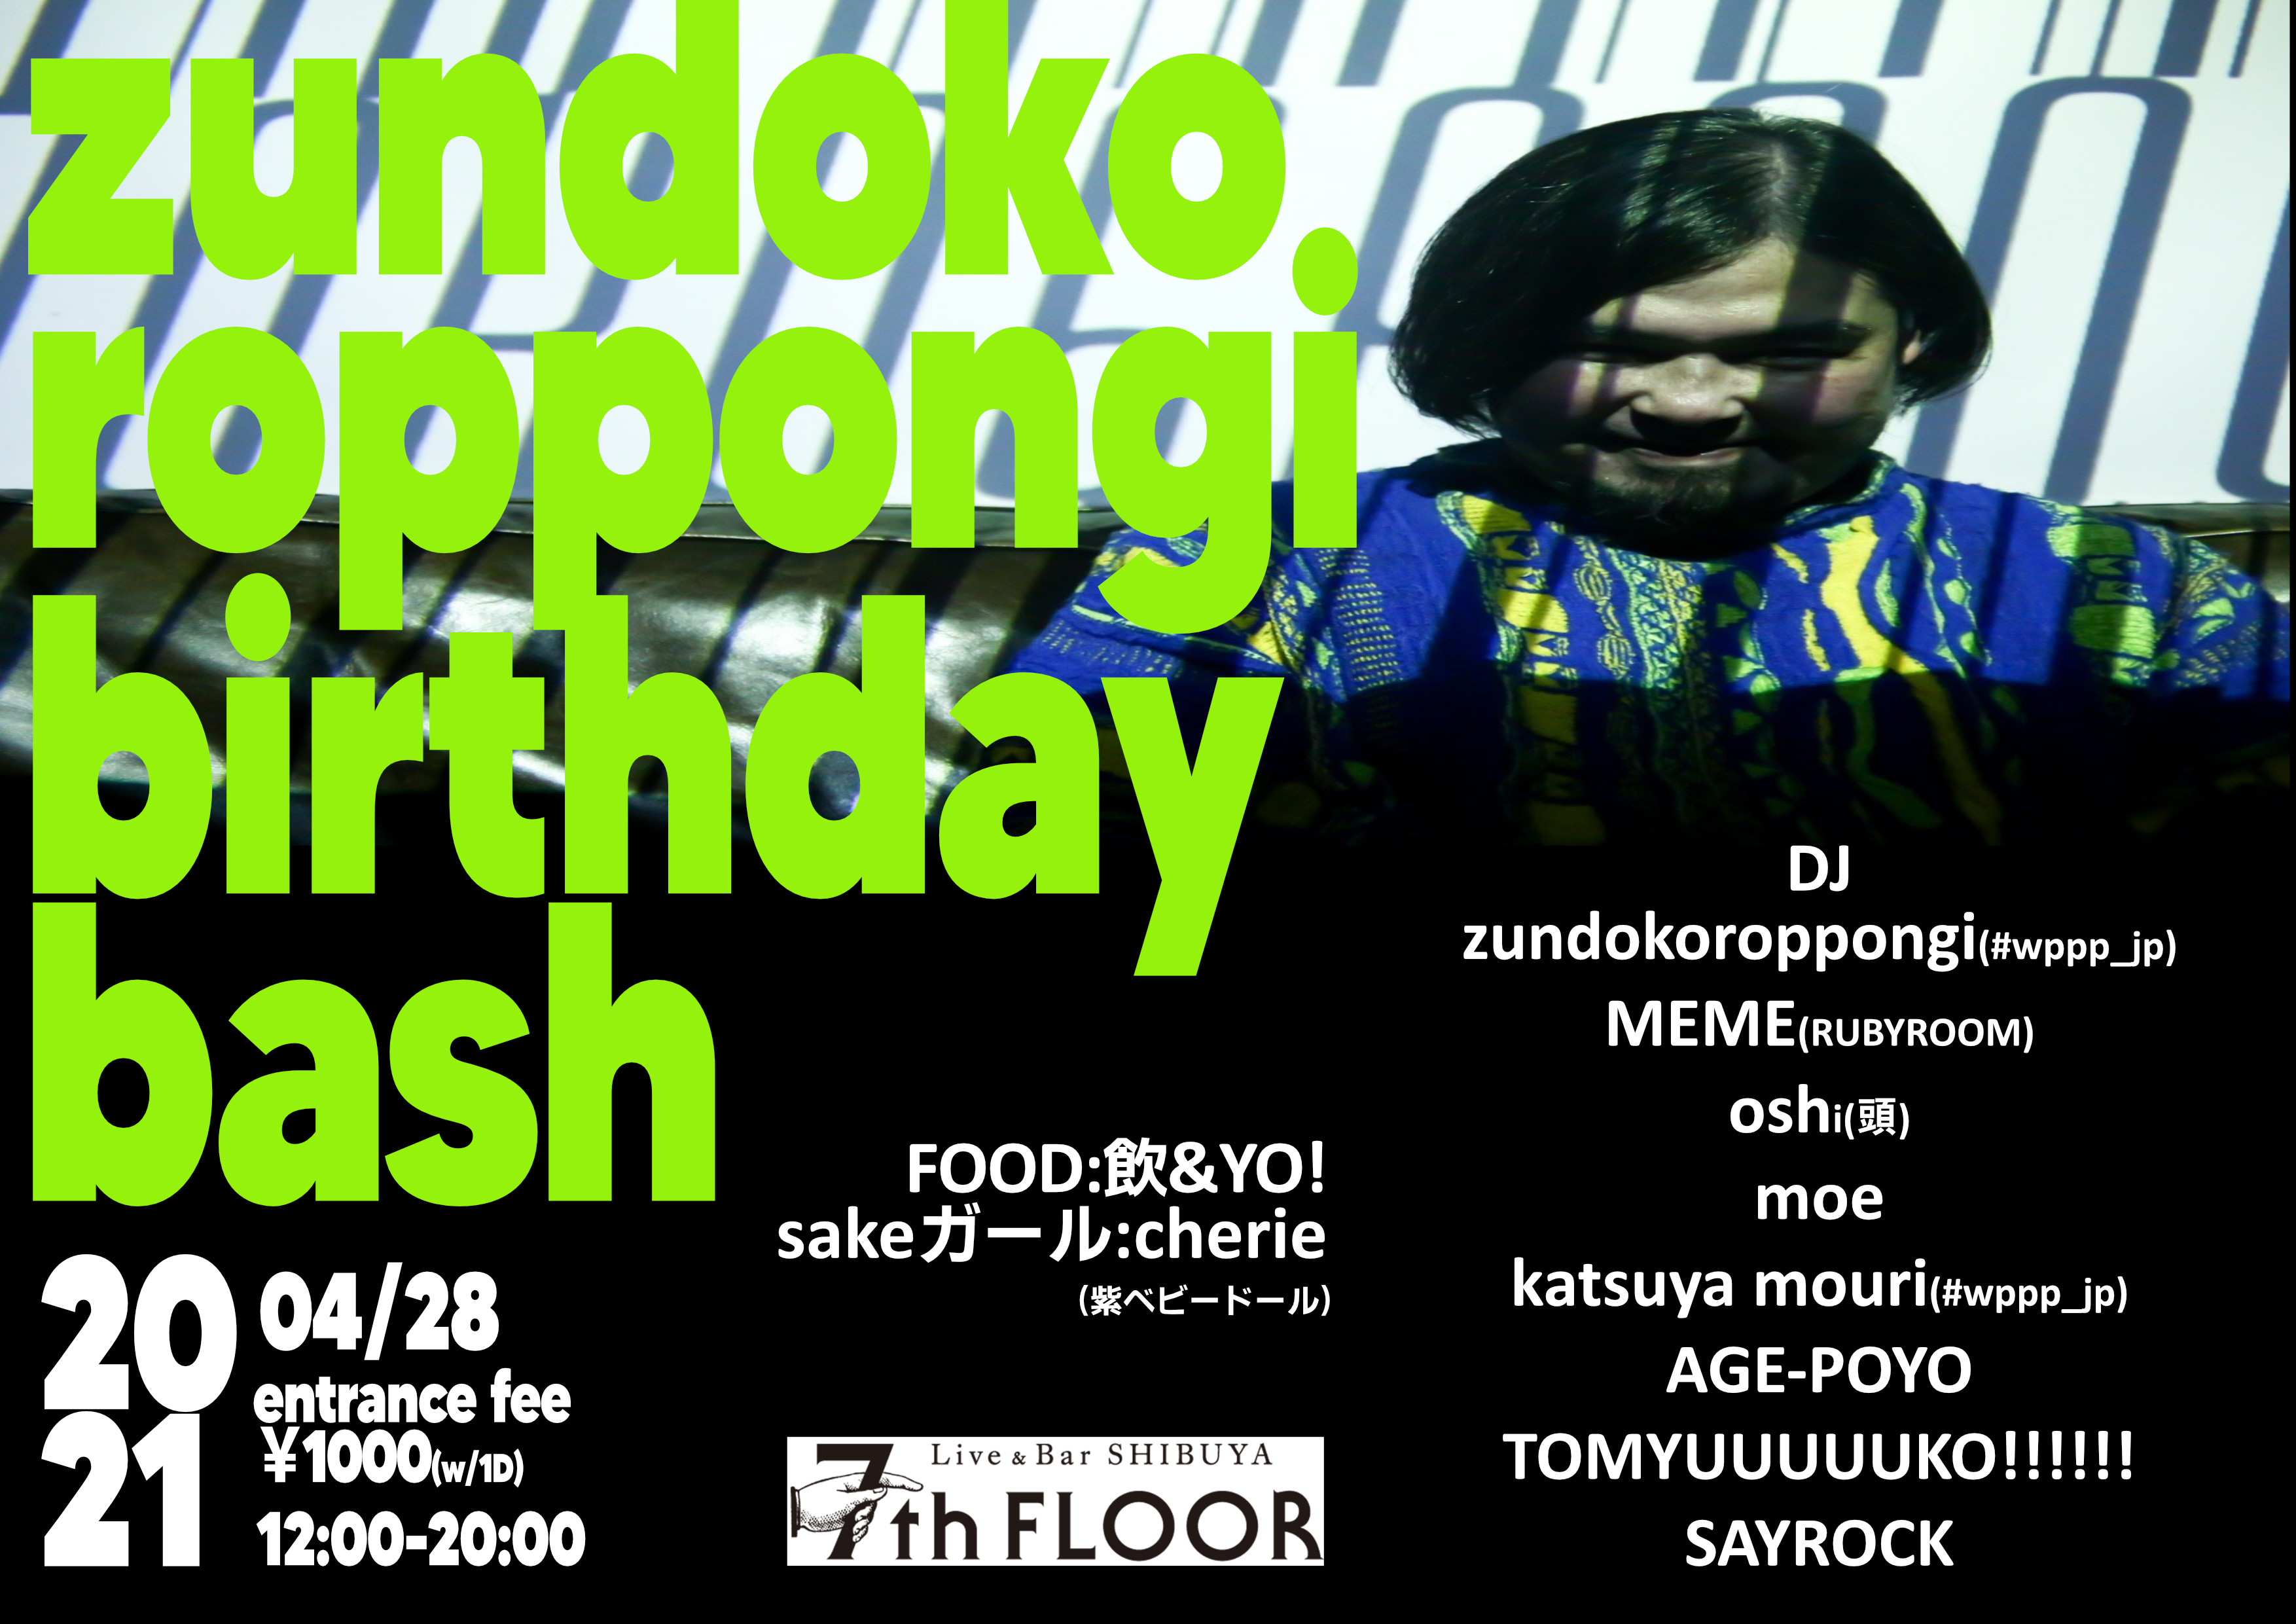 zundokoroppongi birthday bash!!